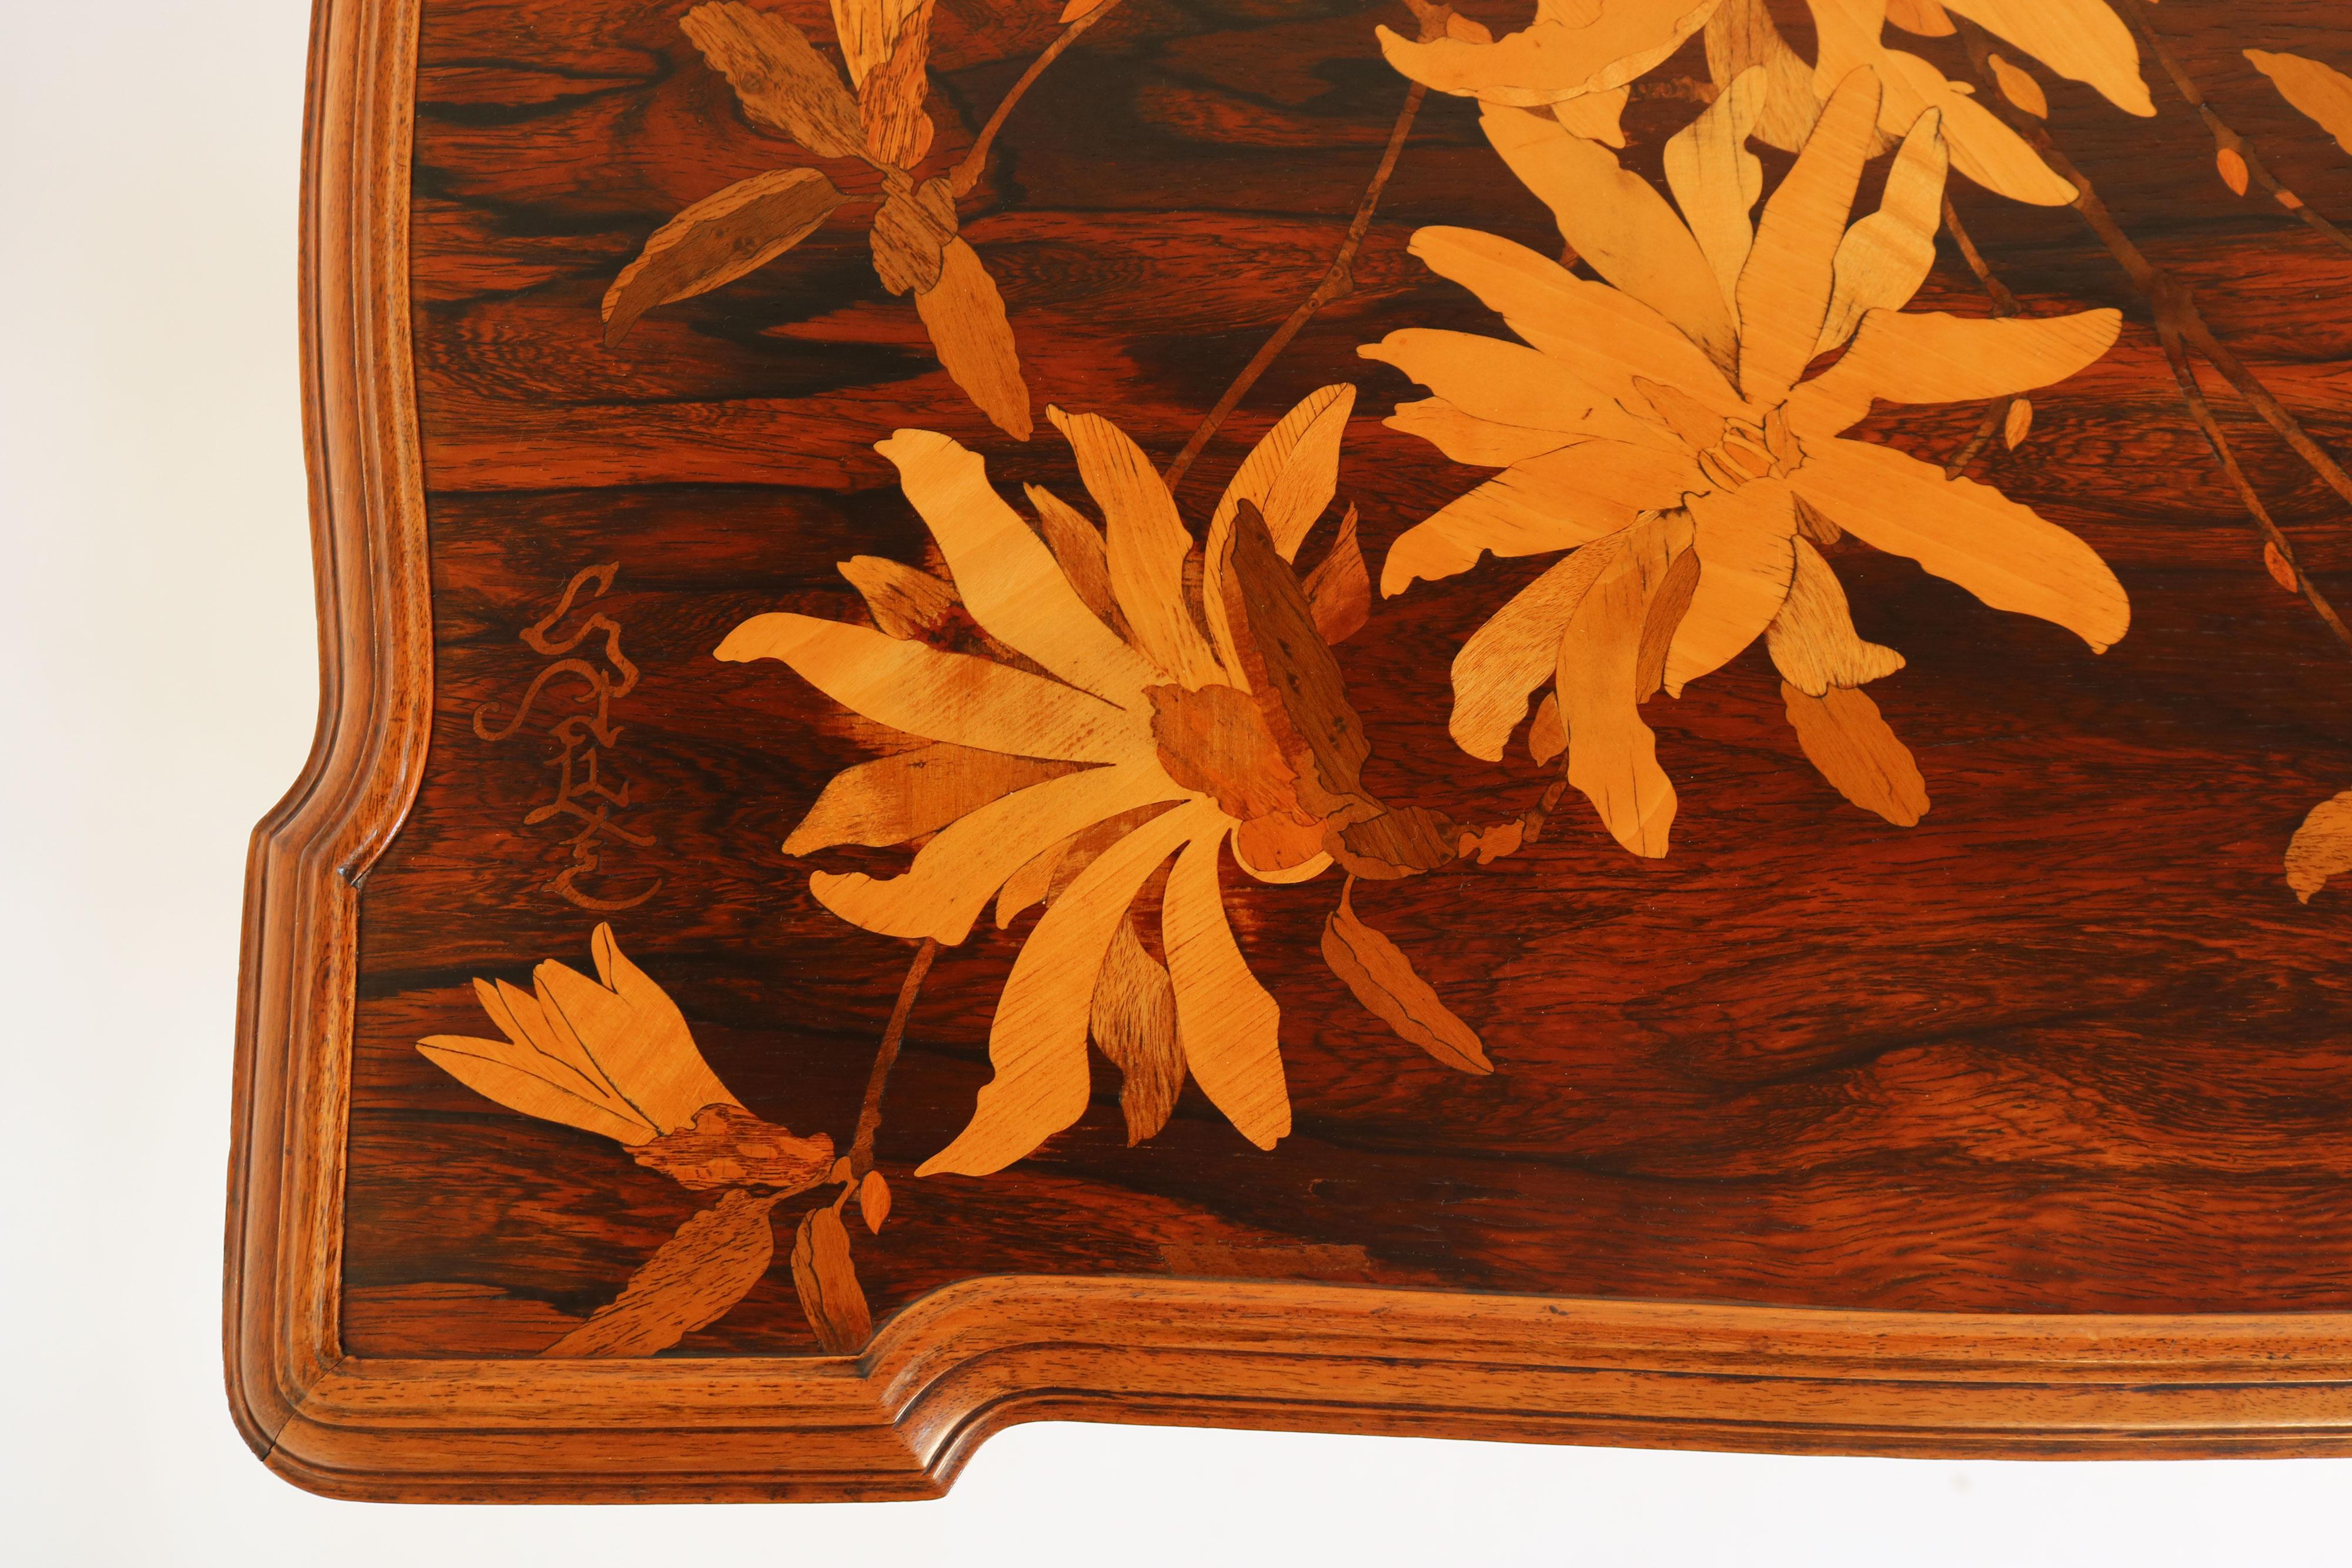 Très rare table d'appoint d'origine Emile Galle ''plate 66 Japonisme'' en style Art Nouveau. 
Cette belle table d'appoint a été créée par Emile Galle en 1900, pendant la période de l'art nouveau. Il présente une marqueterie exquise qui s'inspire du